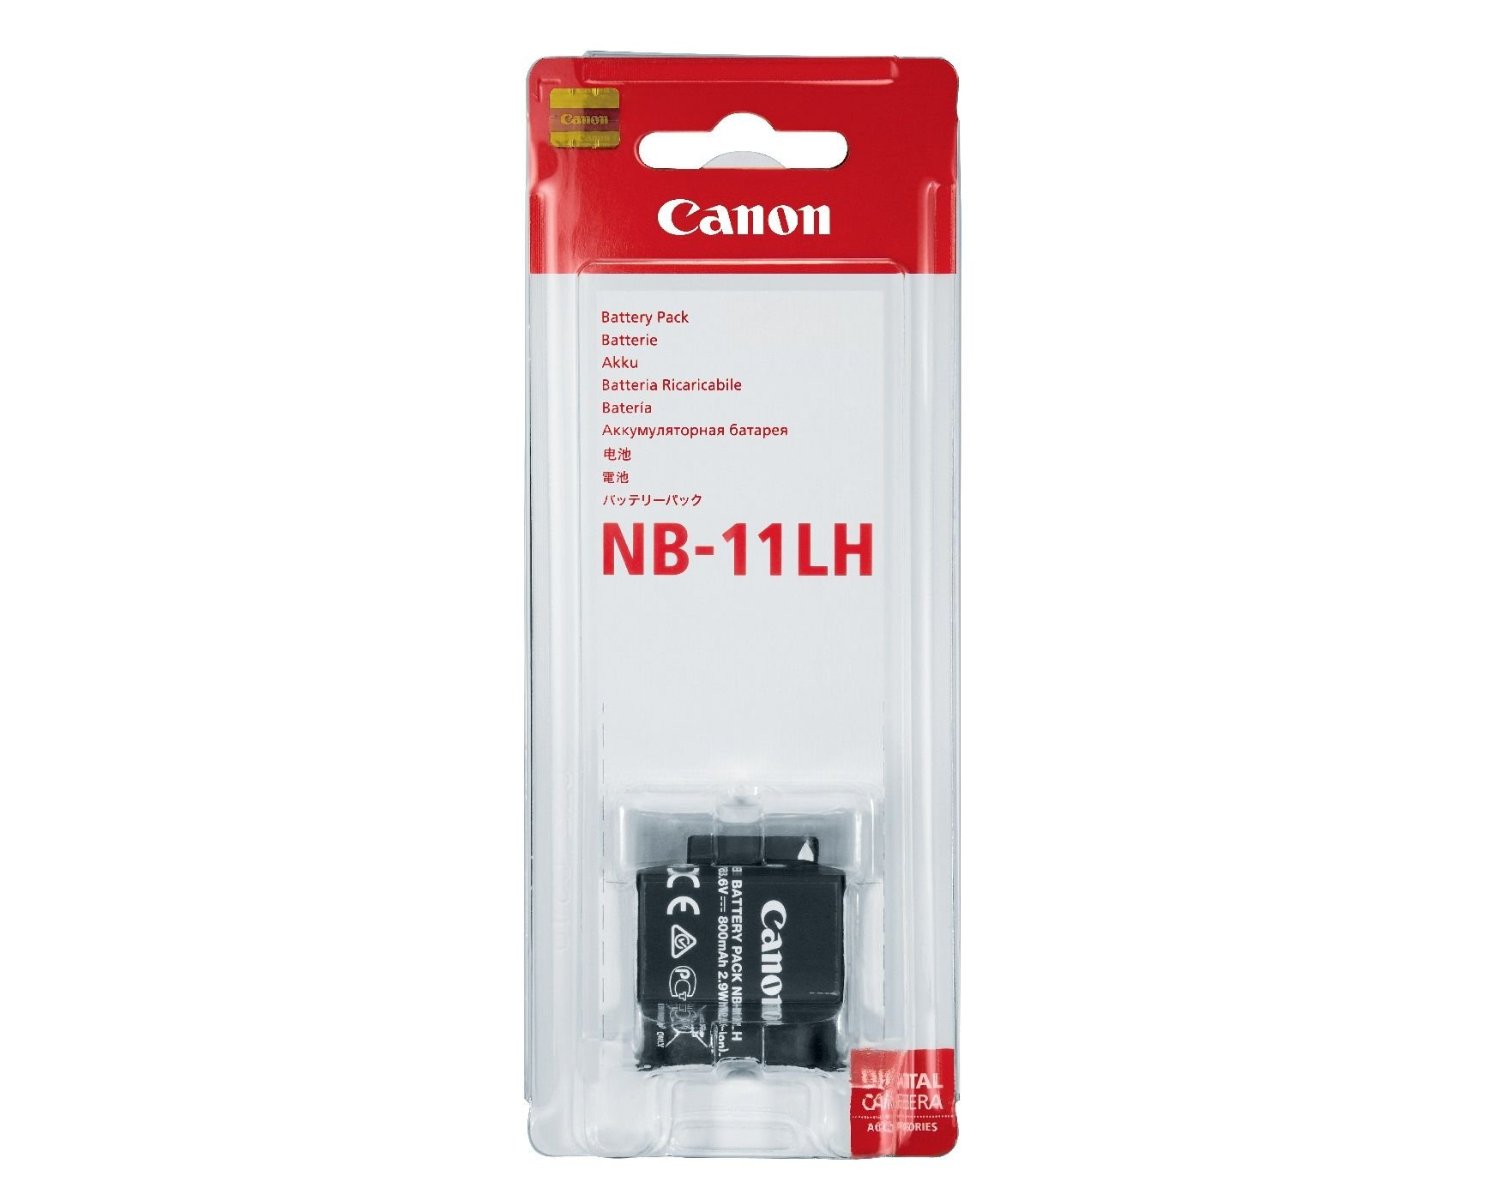 Pack de baterías Canon NB-11LH